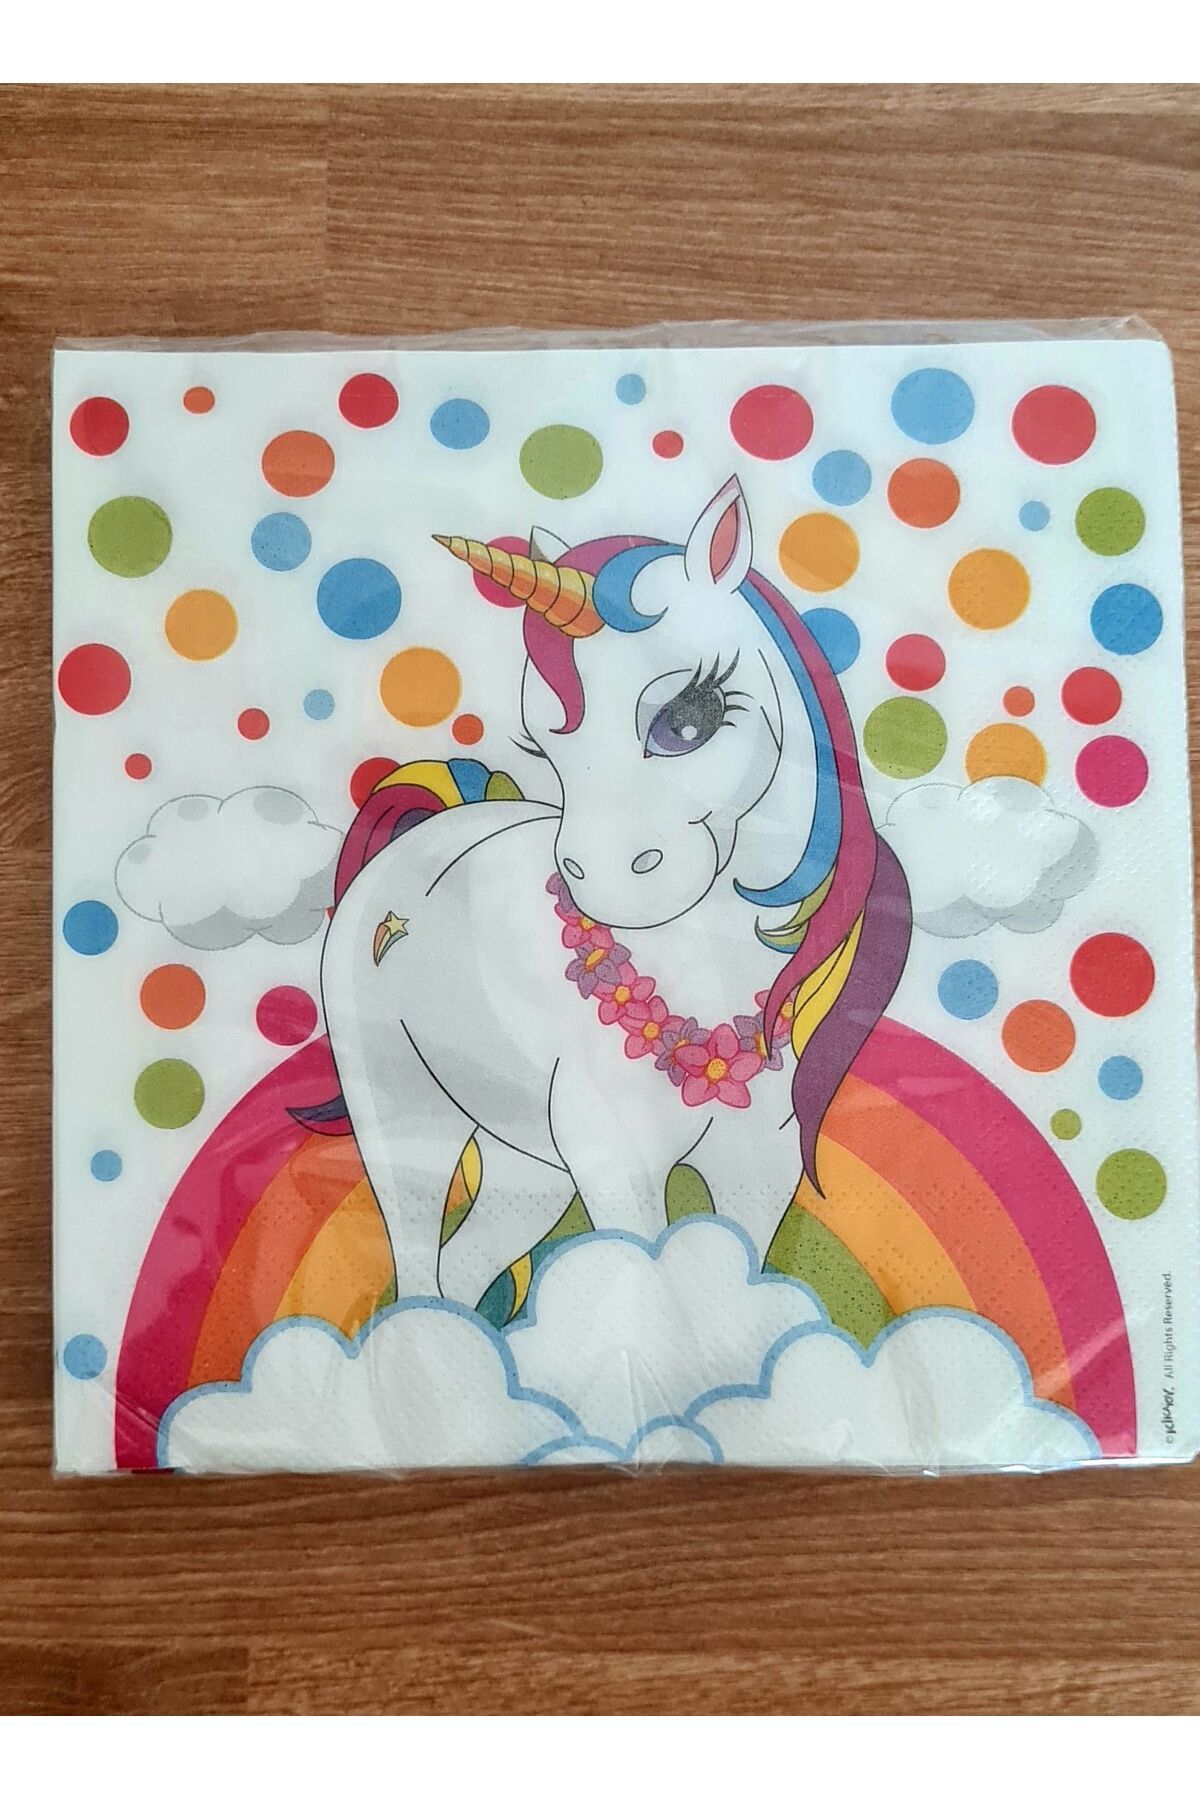 merni Unicorn Boynuzlu At Gökkuşağı Renkli Baskılı Kağıt Peçete 33x33 Cm 16 Adet